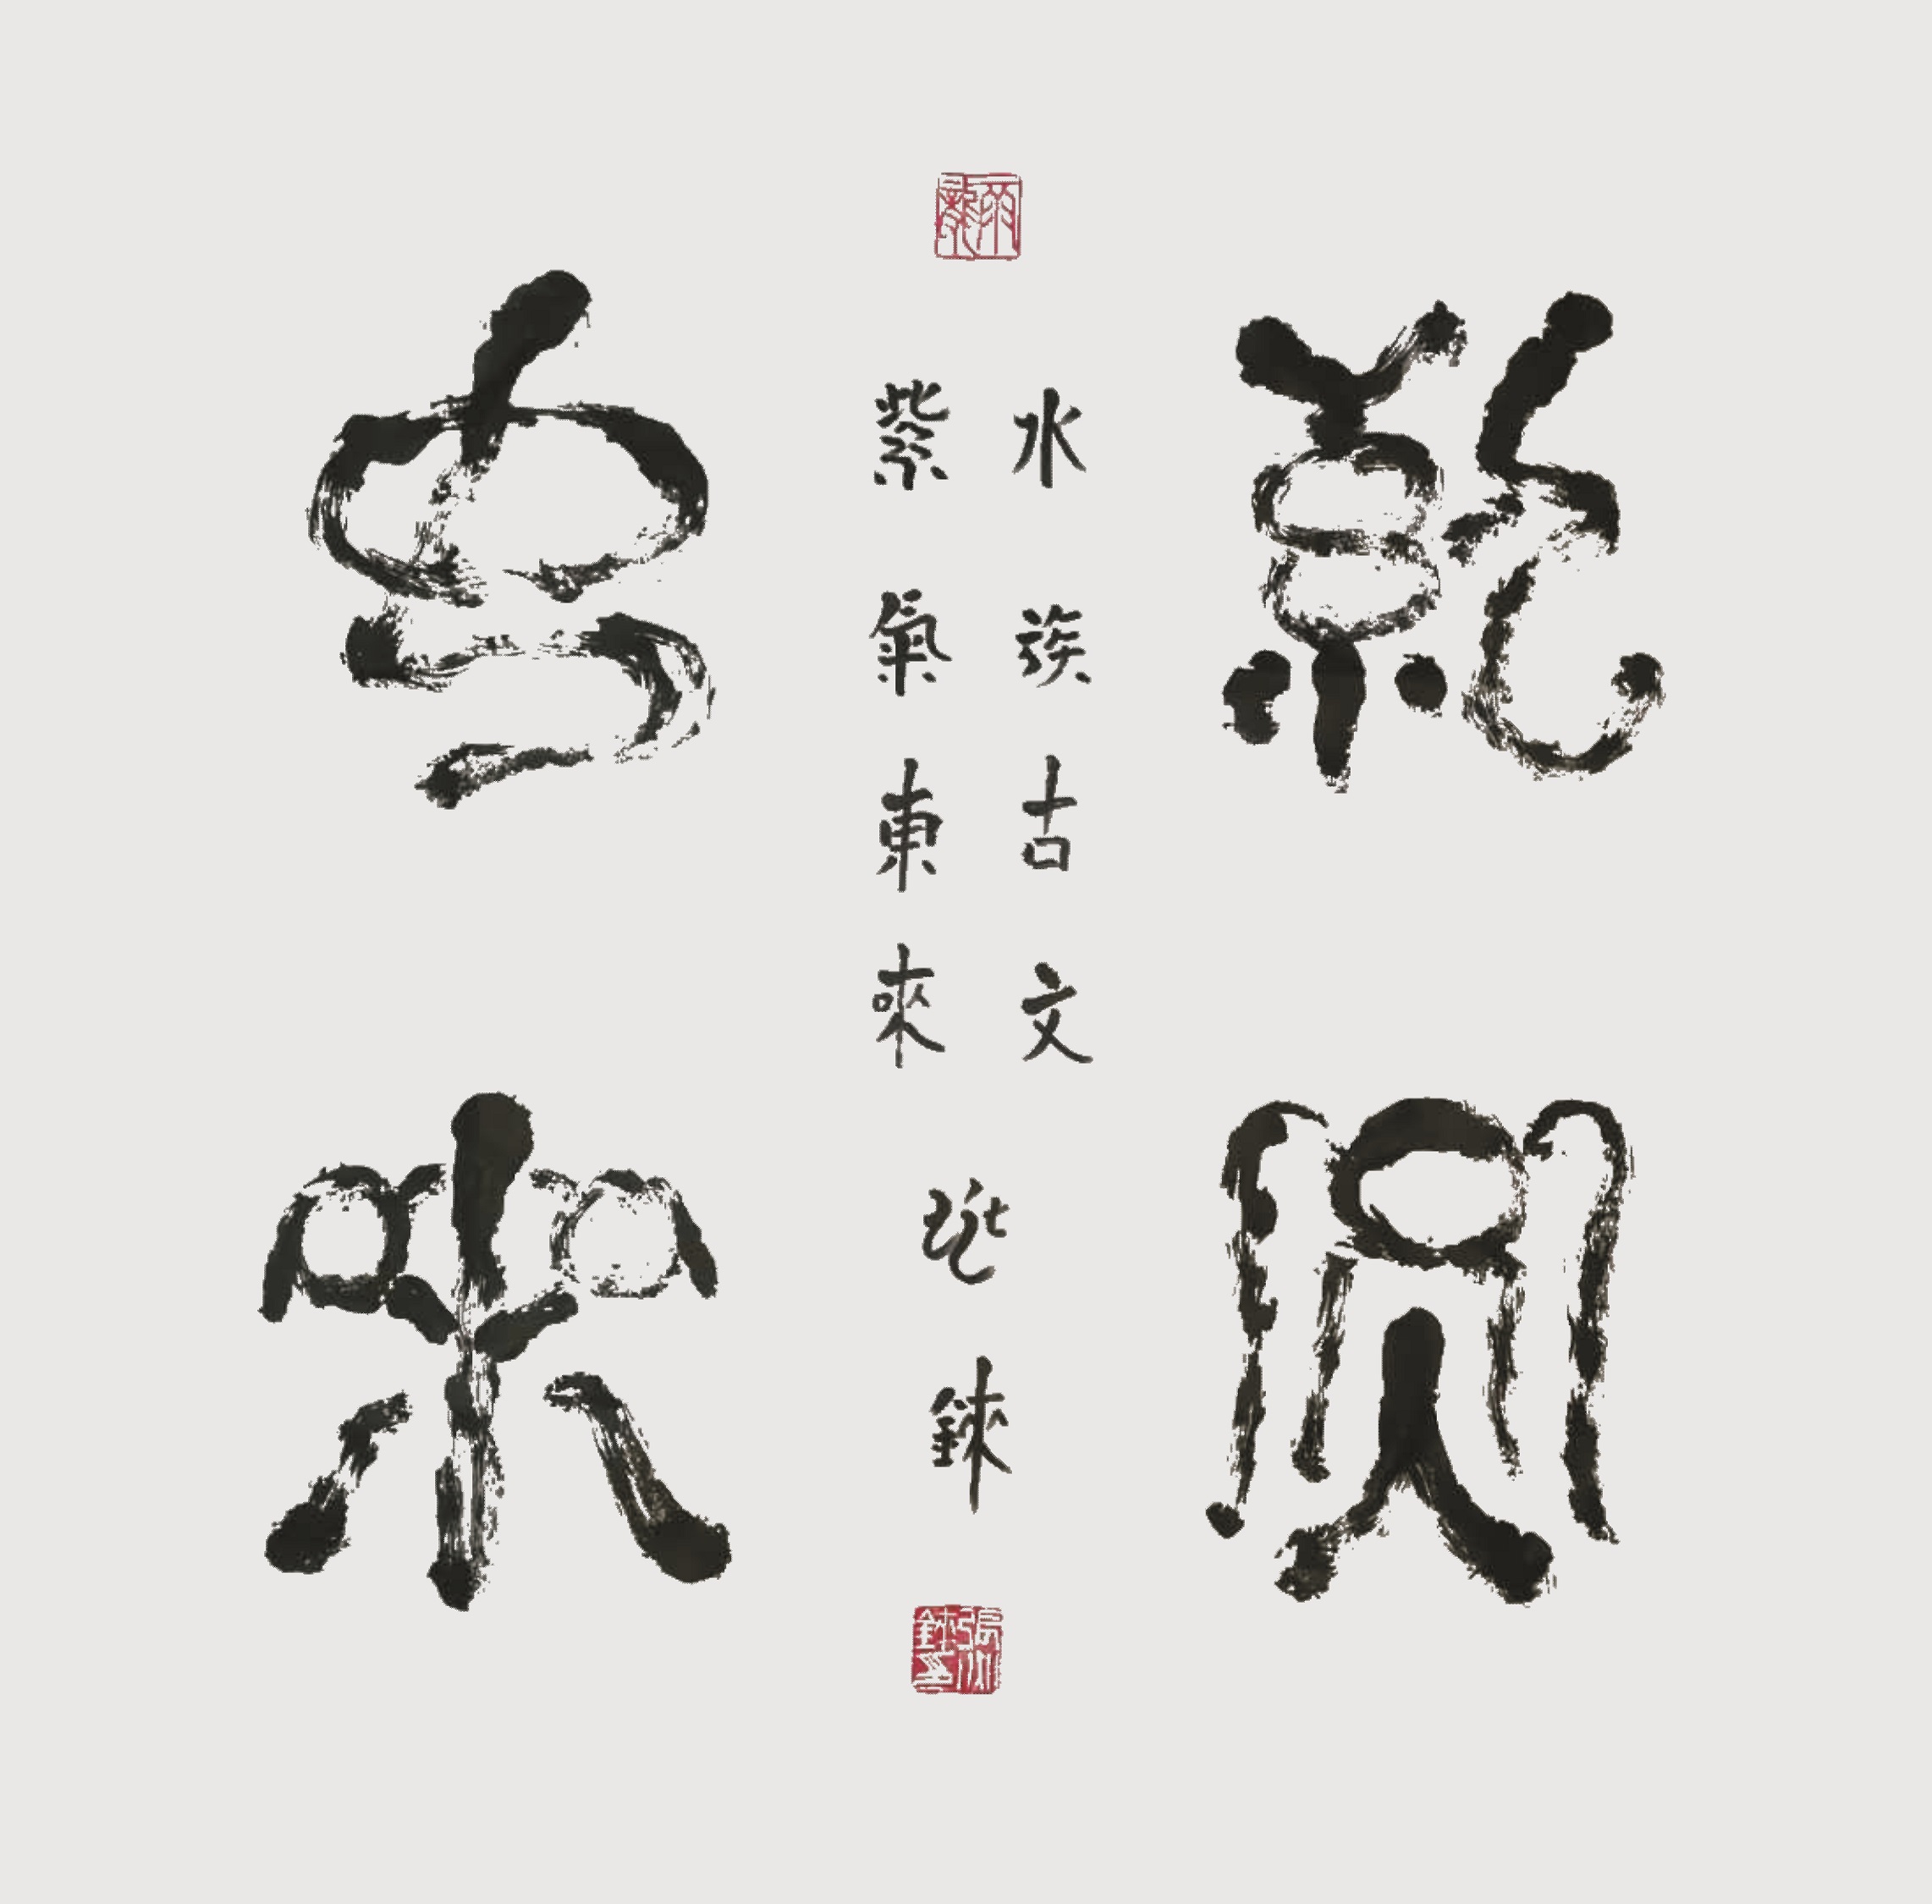 张兆铼水书作品:紫气东来水书,是水族古文字,水族书籍的汉译通称,是